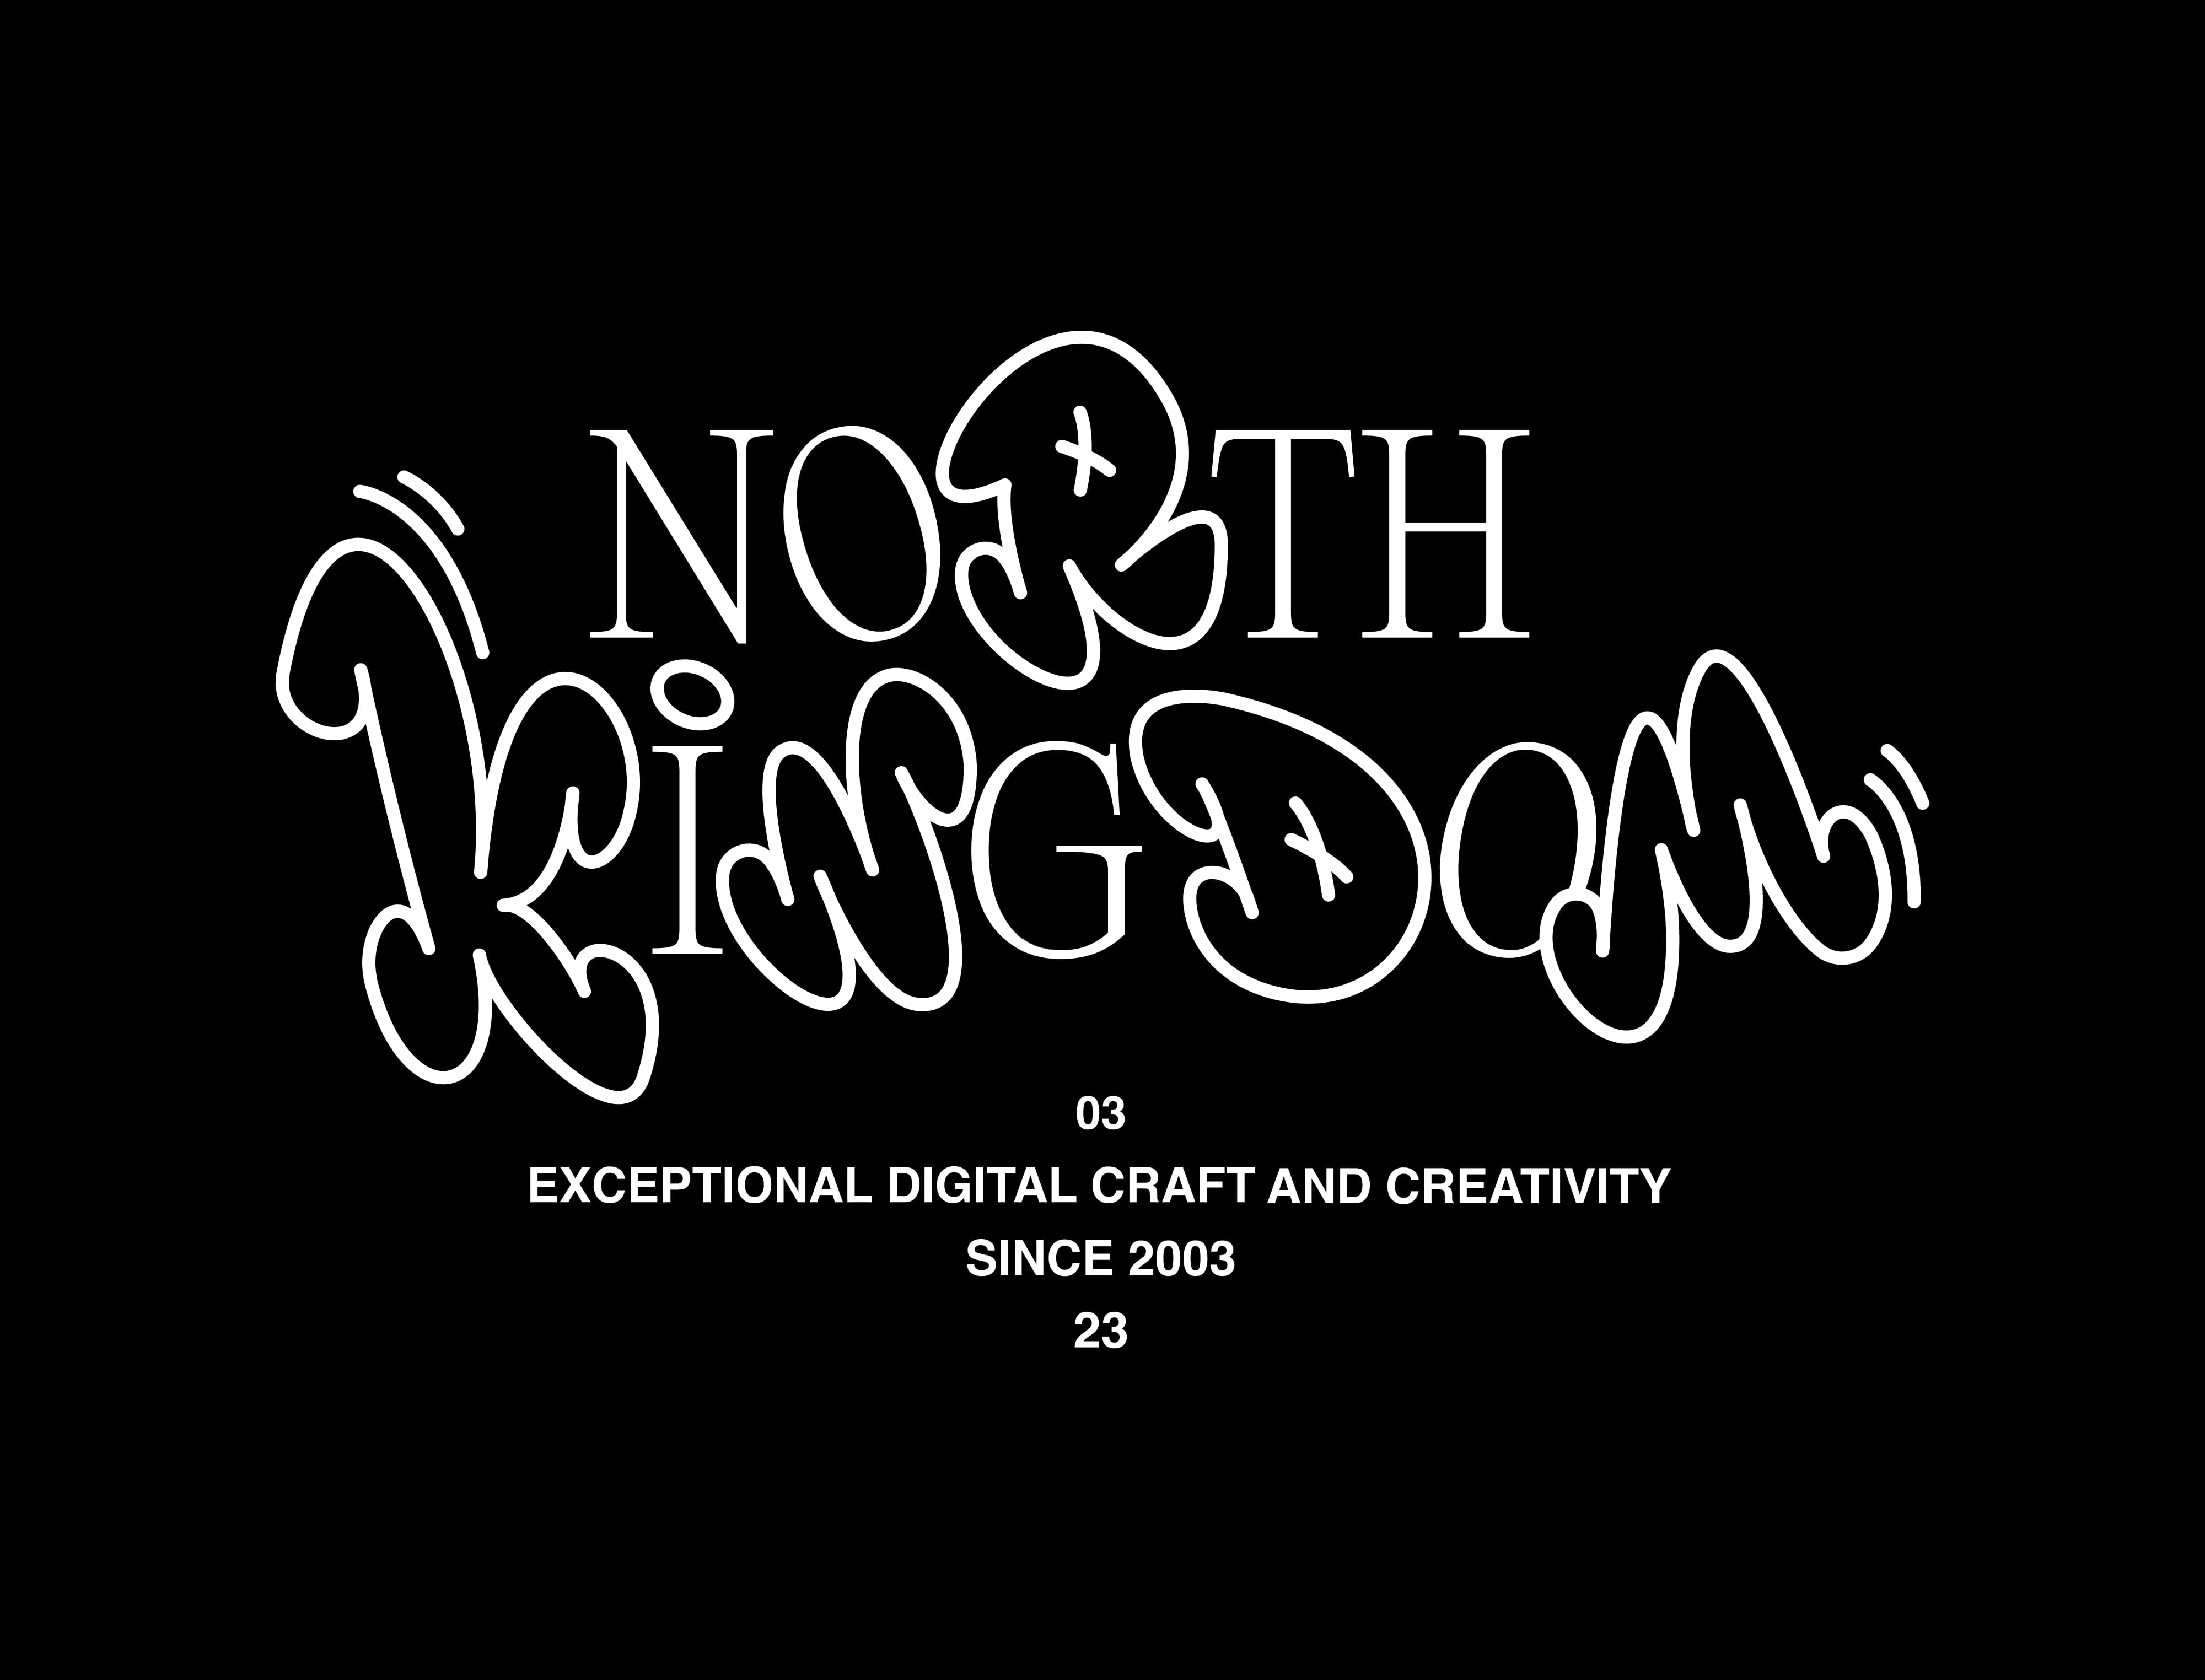 North Kingdom 20 years